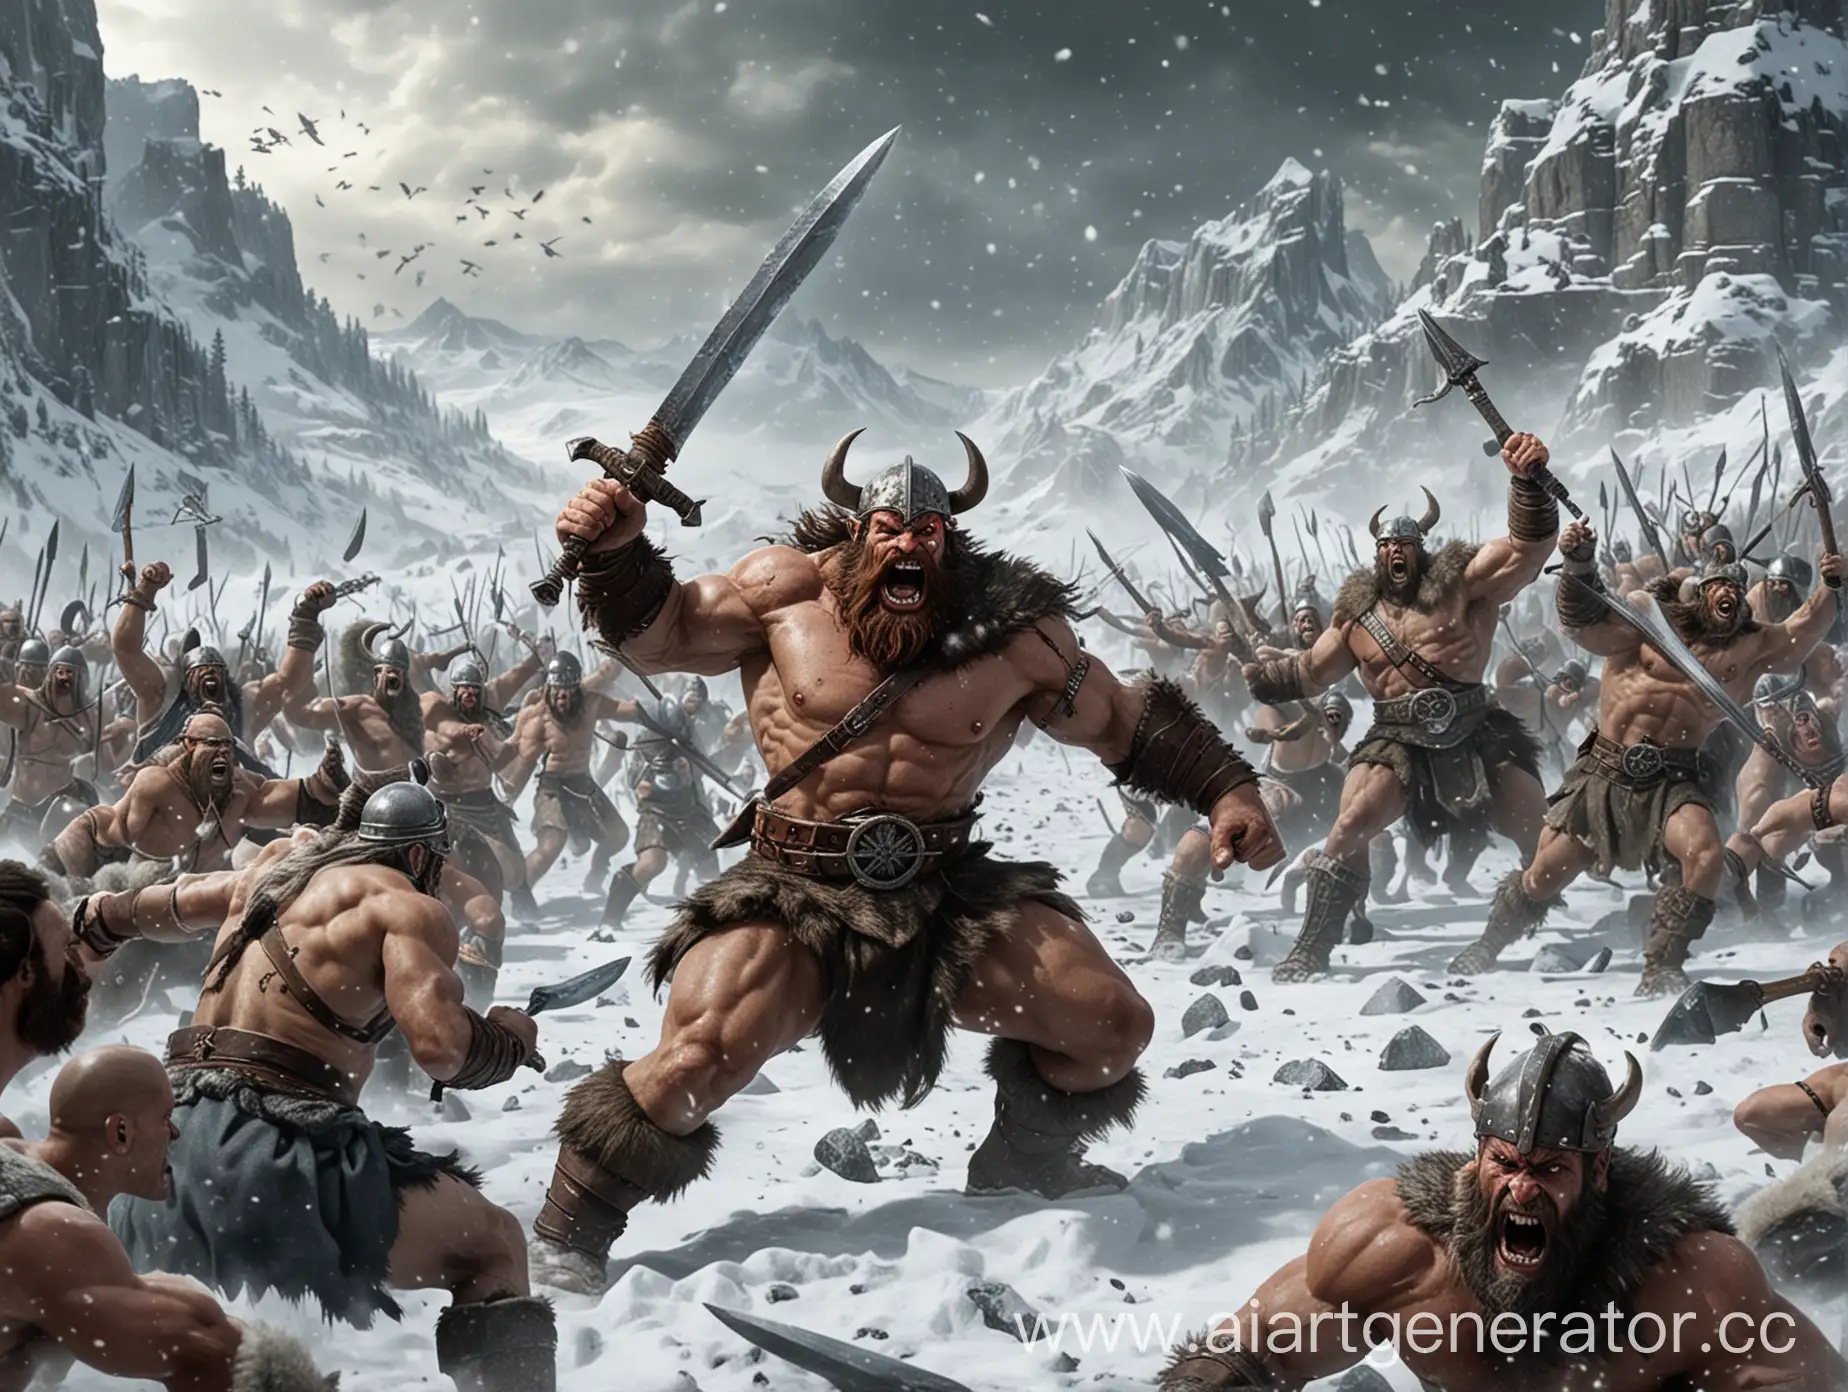 Barbarian-Snow-War-Battle-Fierce-Fighters-Clash-in-Winter-Landscape